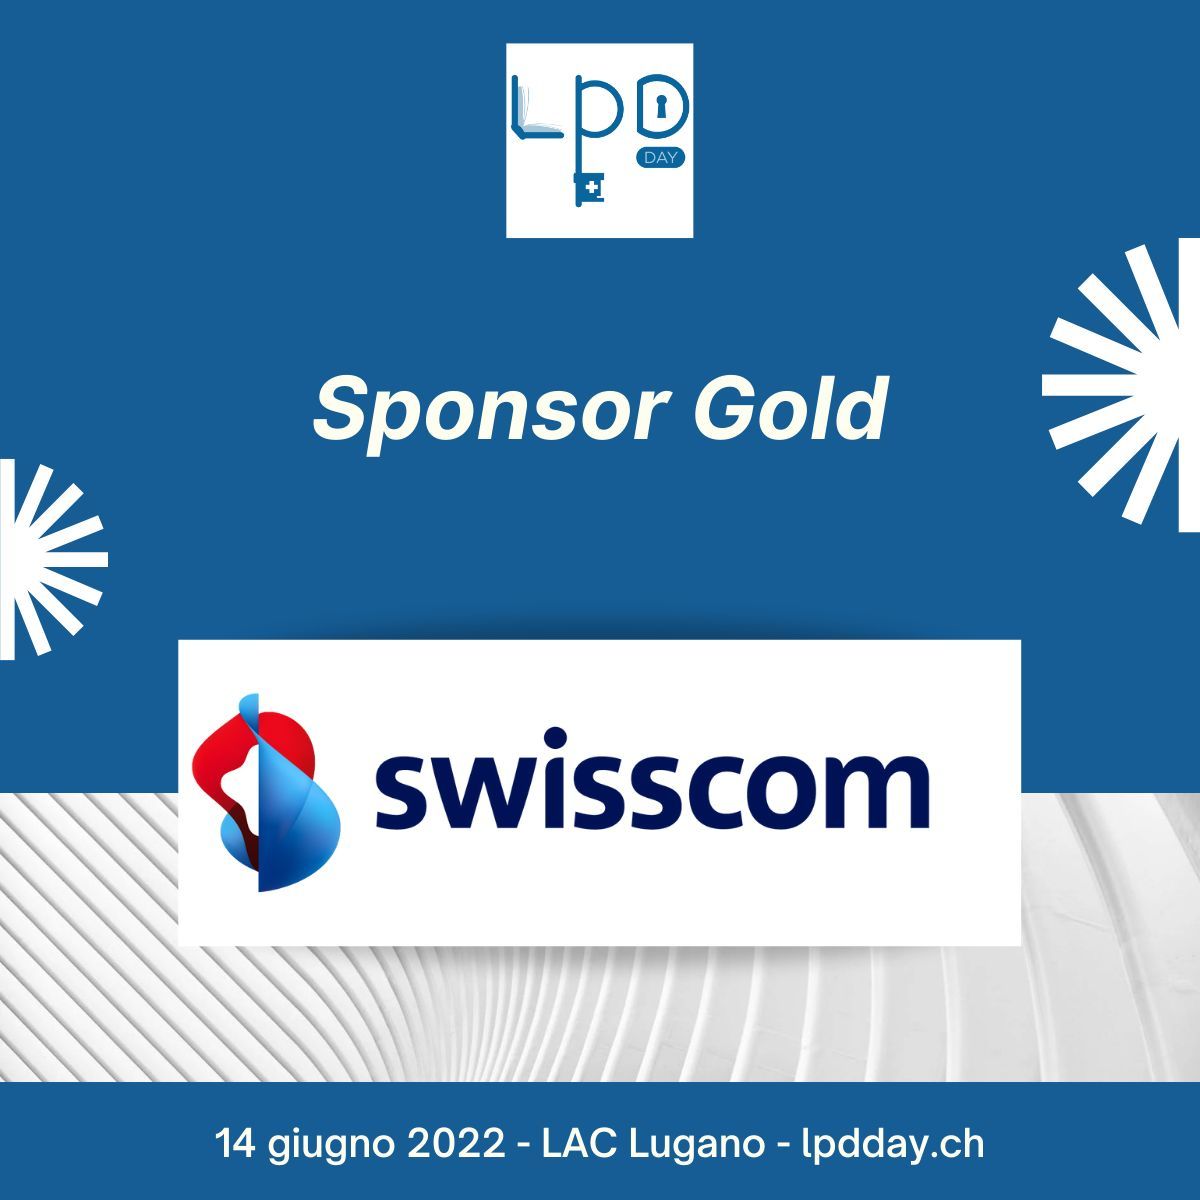 L'annuncio della Swisscom come "Sponsor Gold" del primo LPD Day